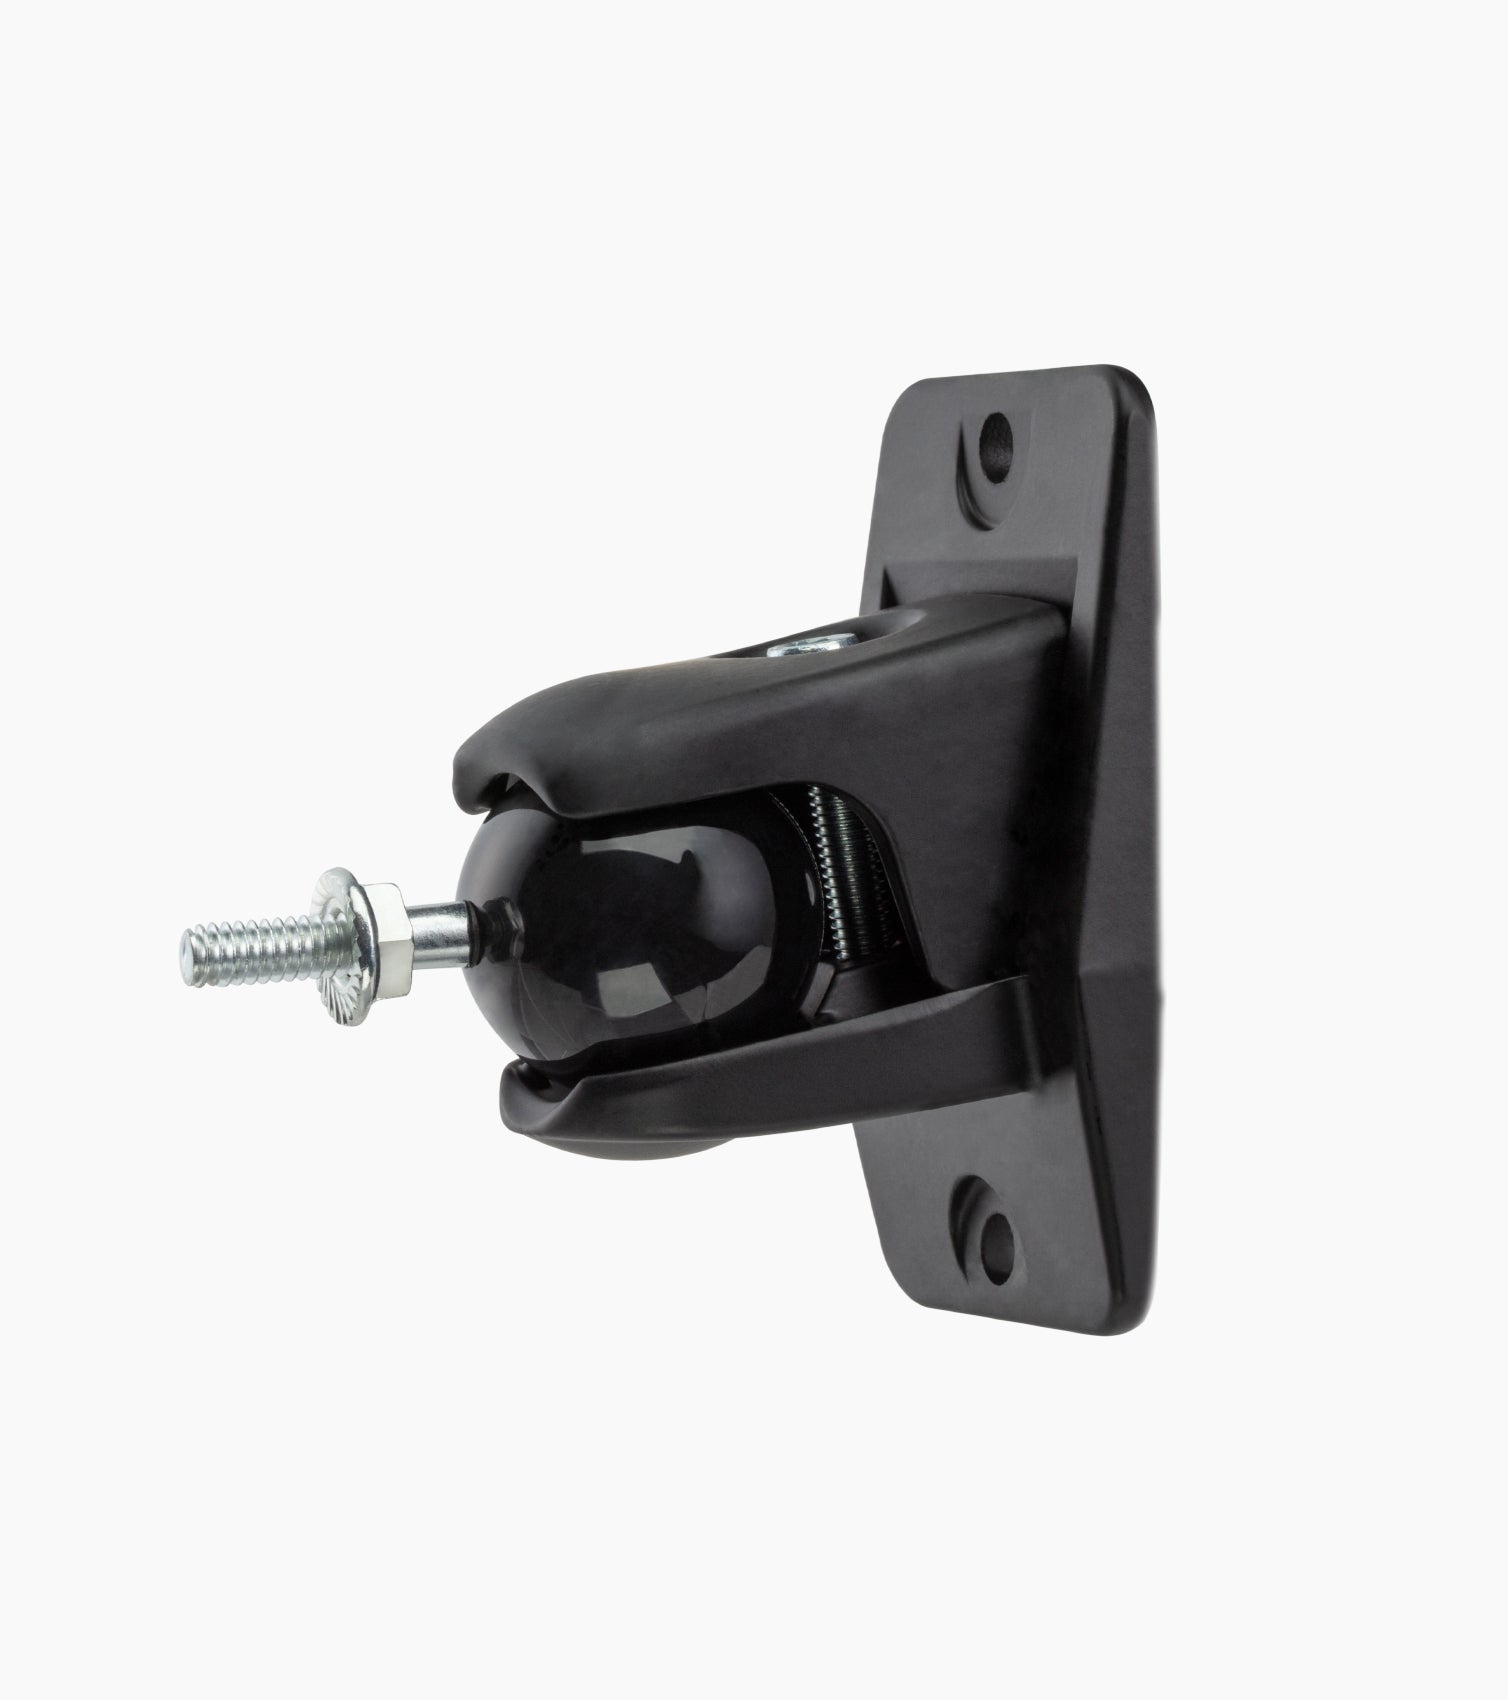  pro grip wall mounted speaker bracket in black